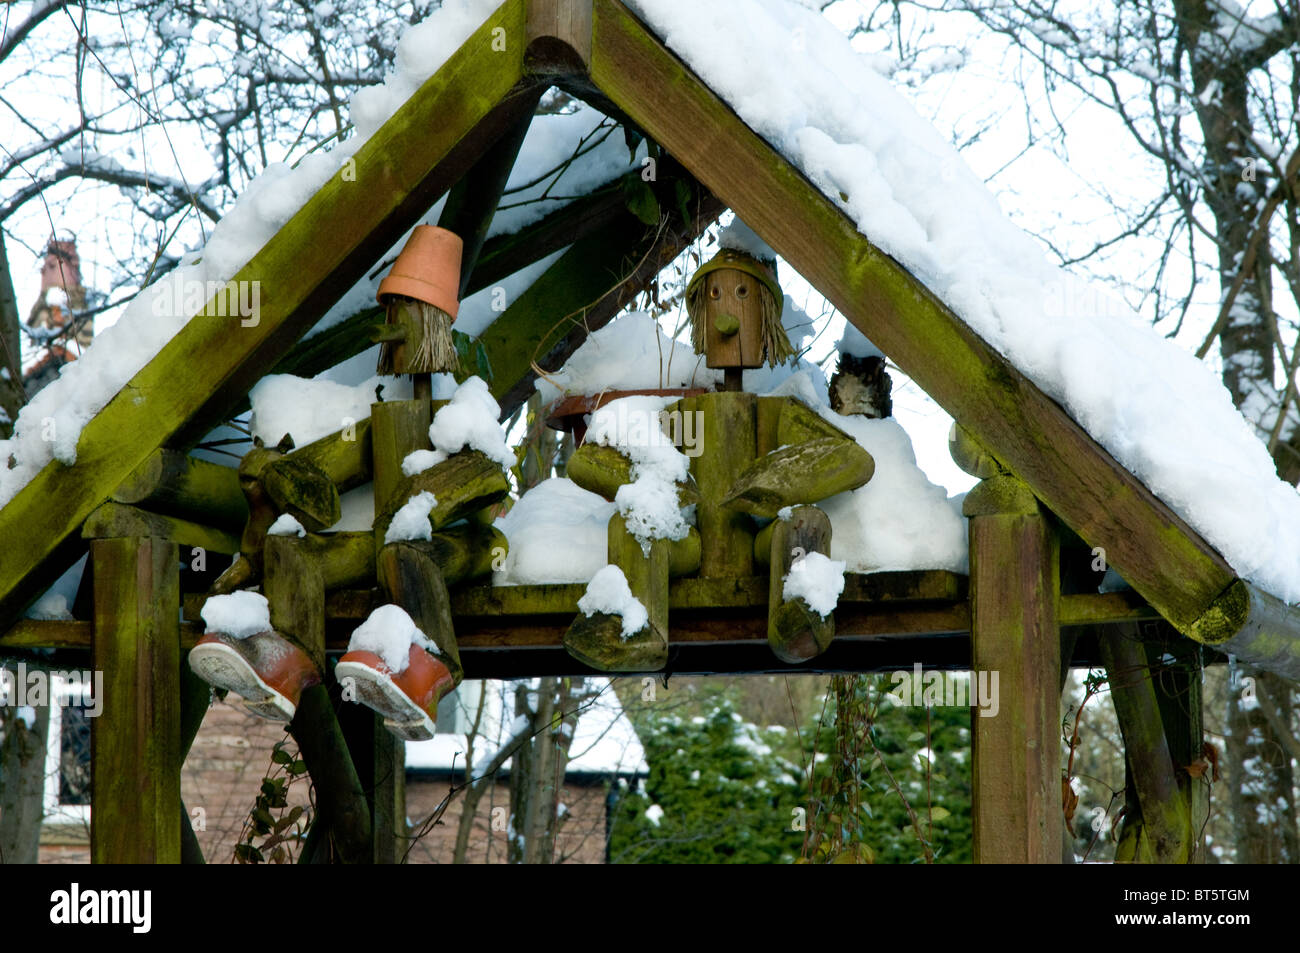 Bill et ben pot de fleurs de glace hommes neige hiver froid gel gel accueil UK Royaume-Uni Angleterre Europe Go Grande-bretagne EU Banque D'Images